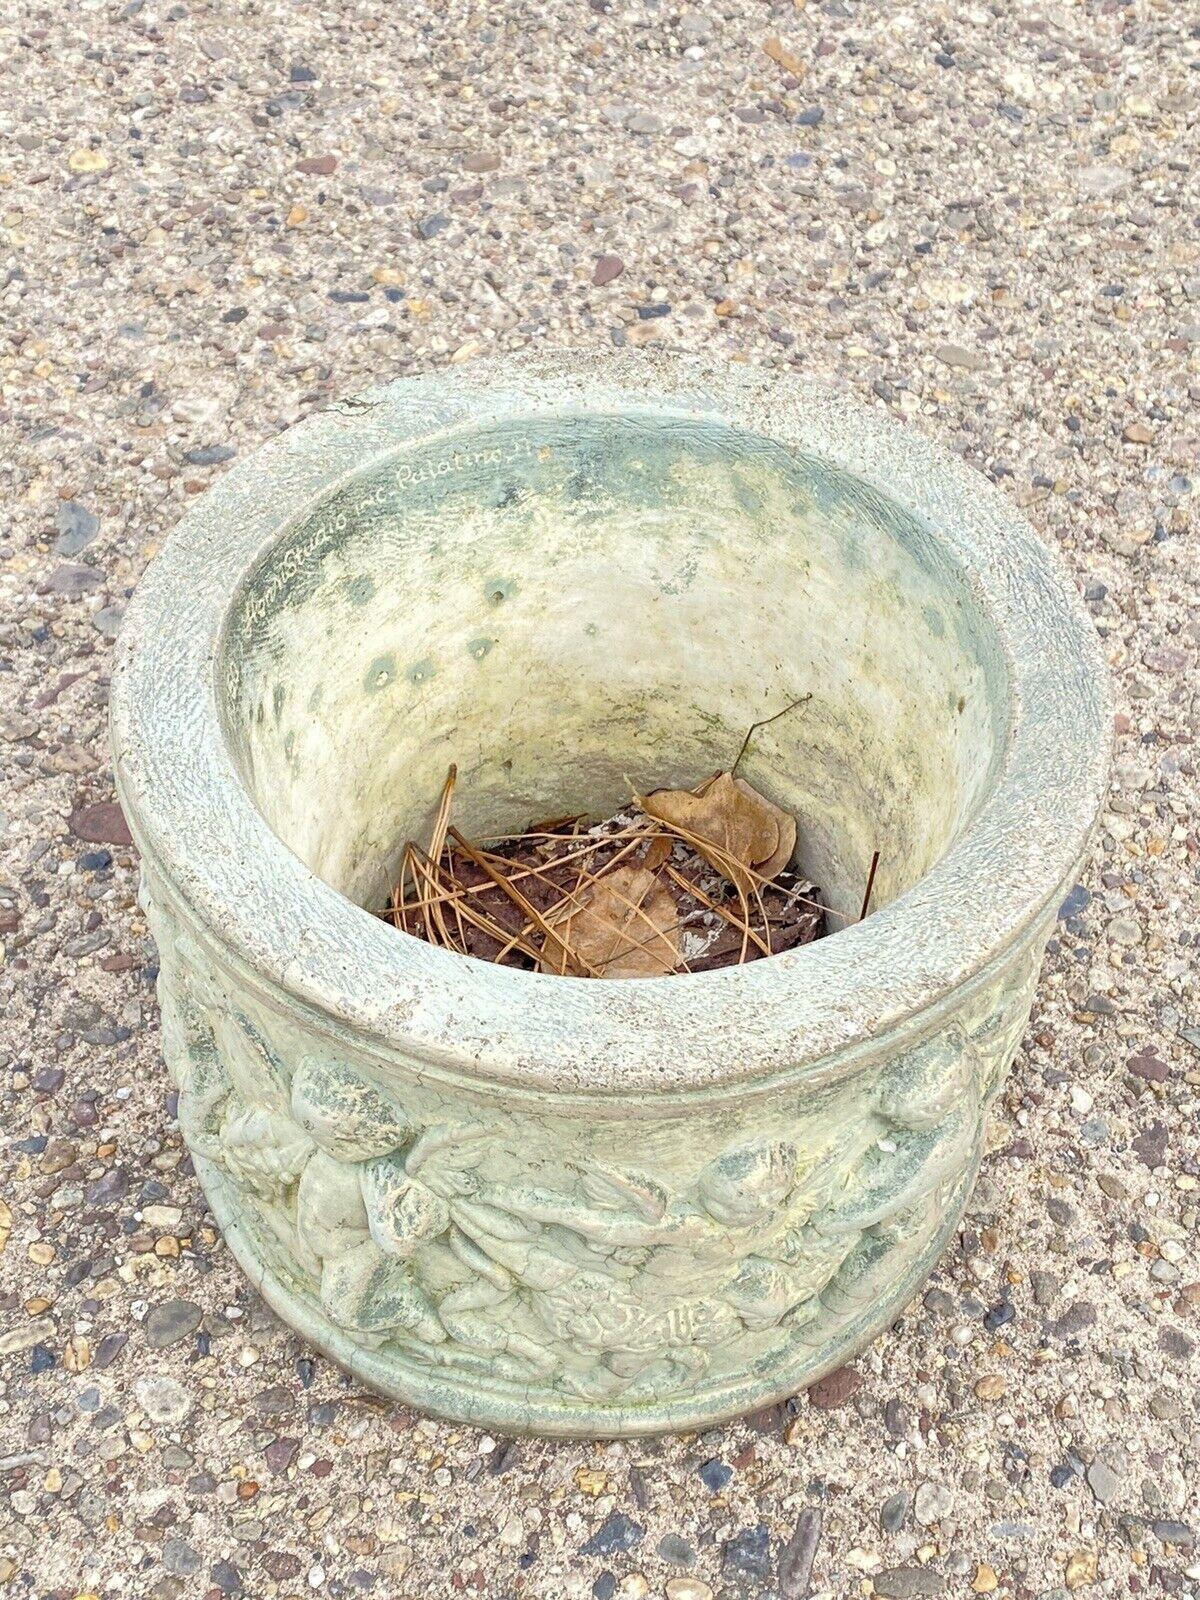 American Classical Henri Studio Concrete Cement Small Round Classical Cherub Garden Planter Pot For Sale